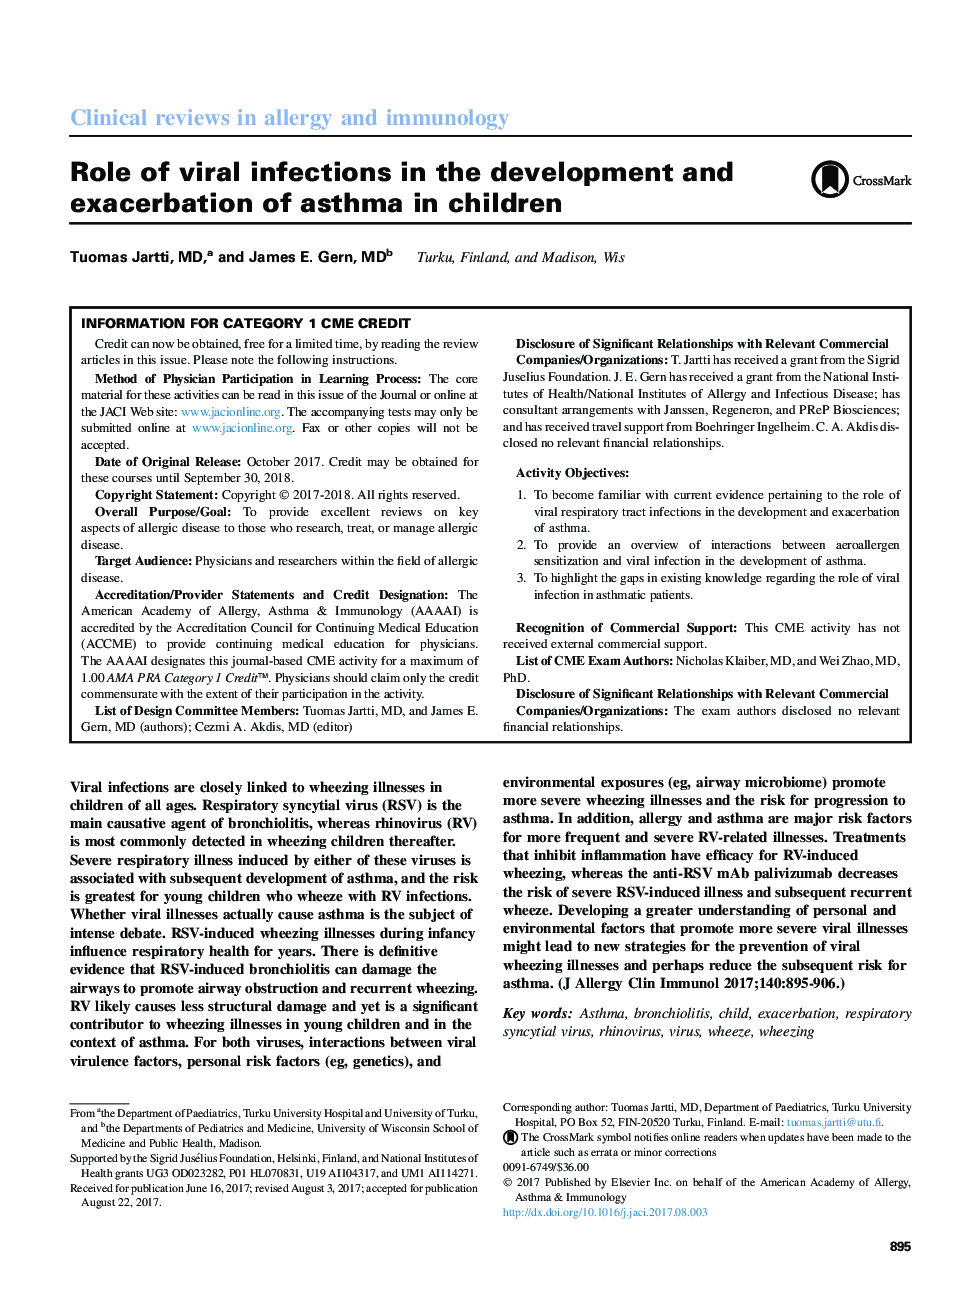 نقش عفونت های ویروسی در توسعه و تشدید آسم در کودکان 